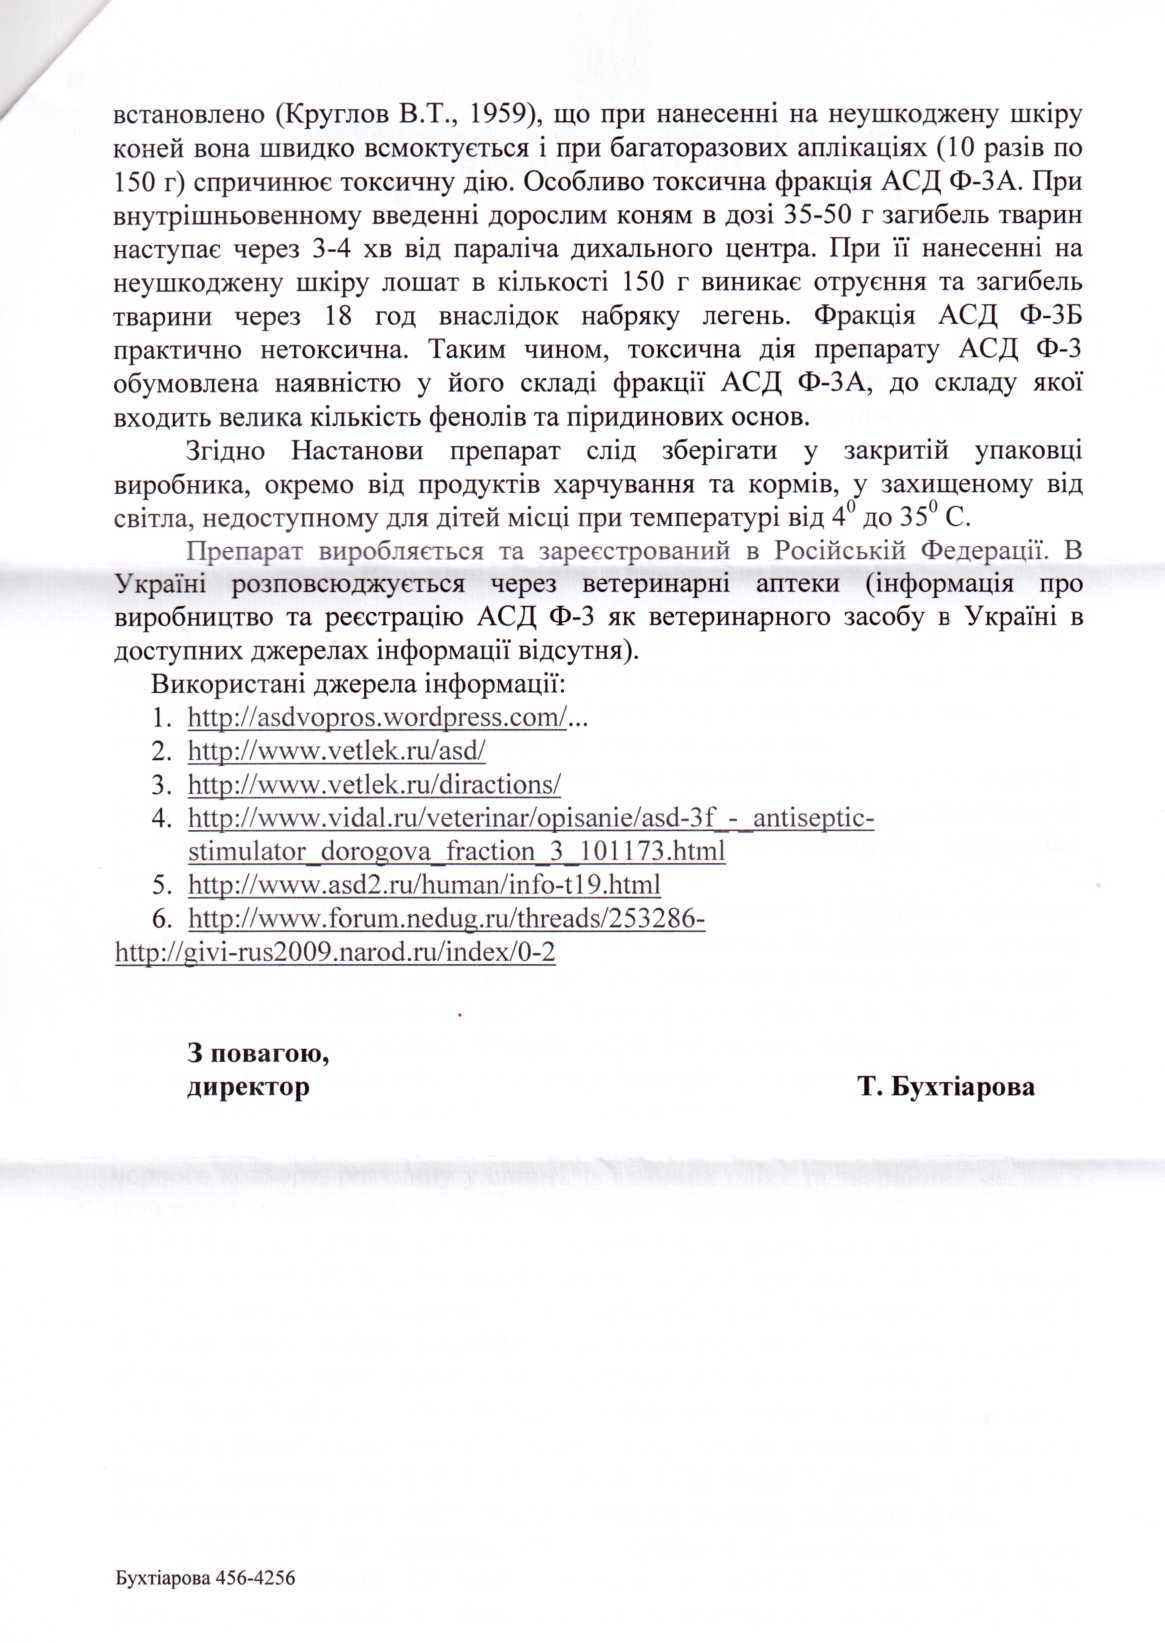 ВСК заявила о применении СБУ токсического вещества против участников Евромайдана 